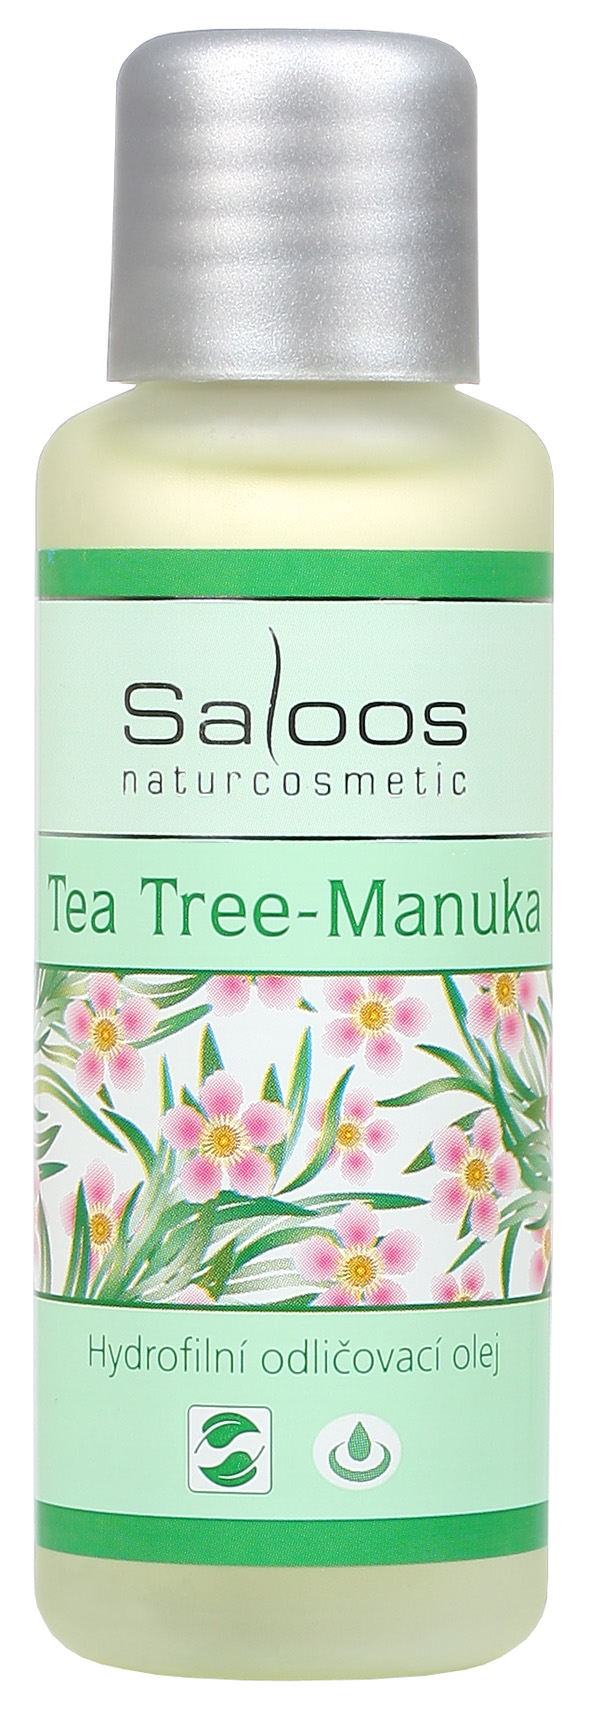 Tea tree Manuka - hydrofilný odličovací olej 50